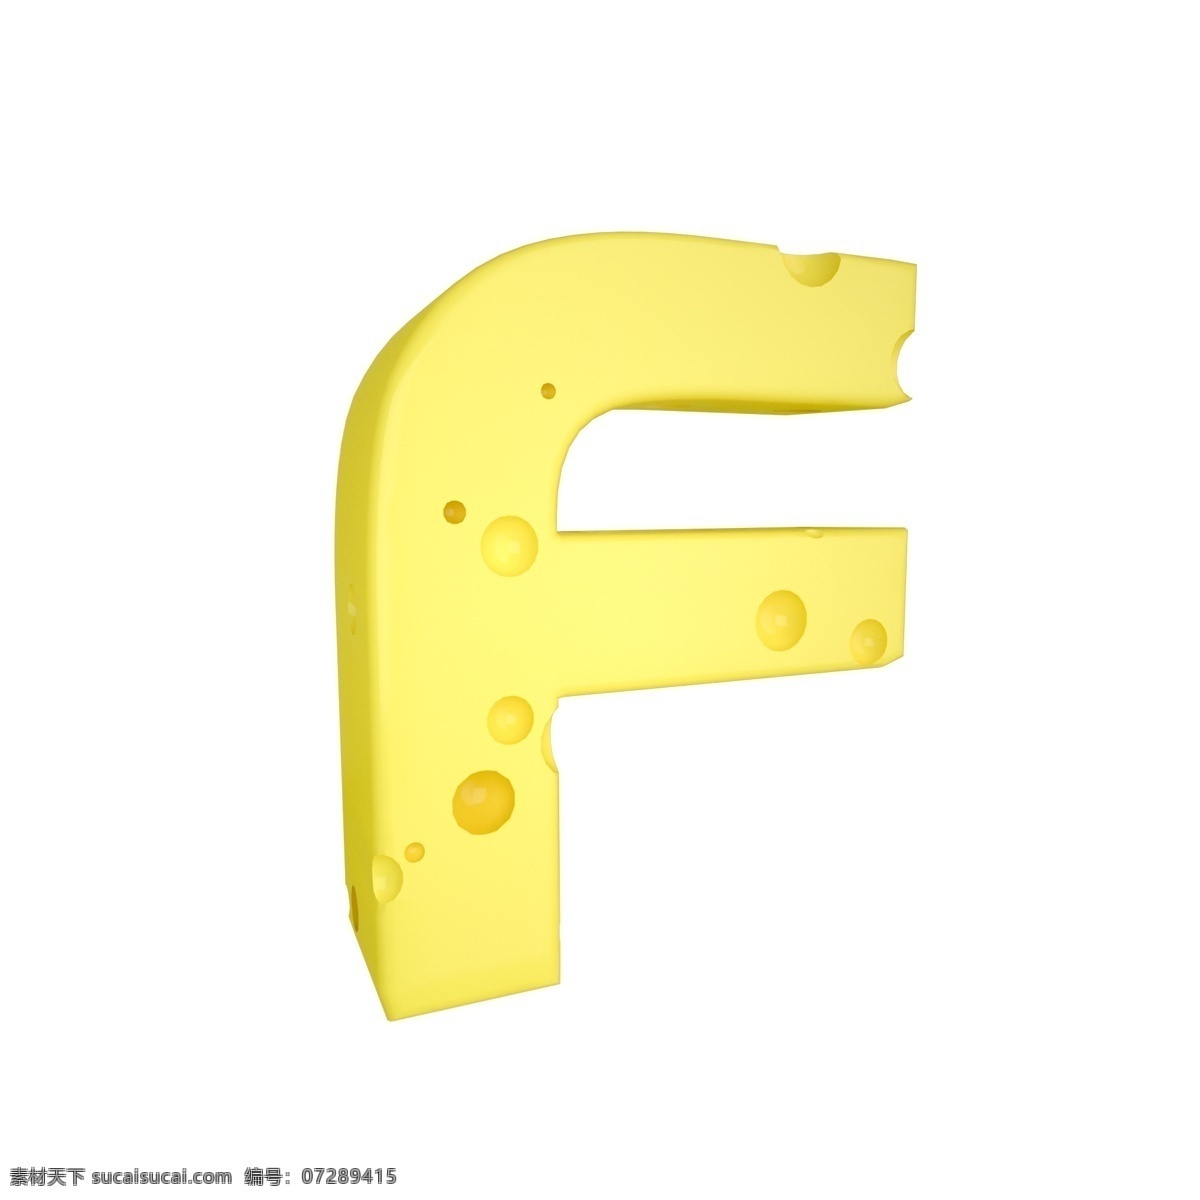 c4d 创意 奶酪 字母 f 装饰 3d 黄色 立体 食物 平面海报配图 电商淘宝装饰 可爱 柔和 字母f